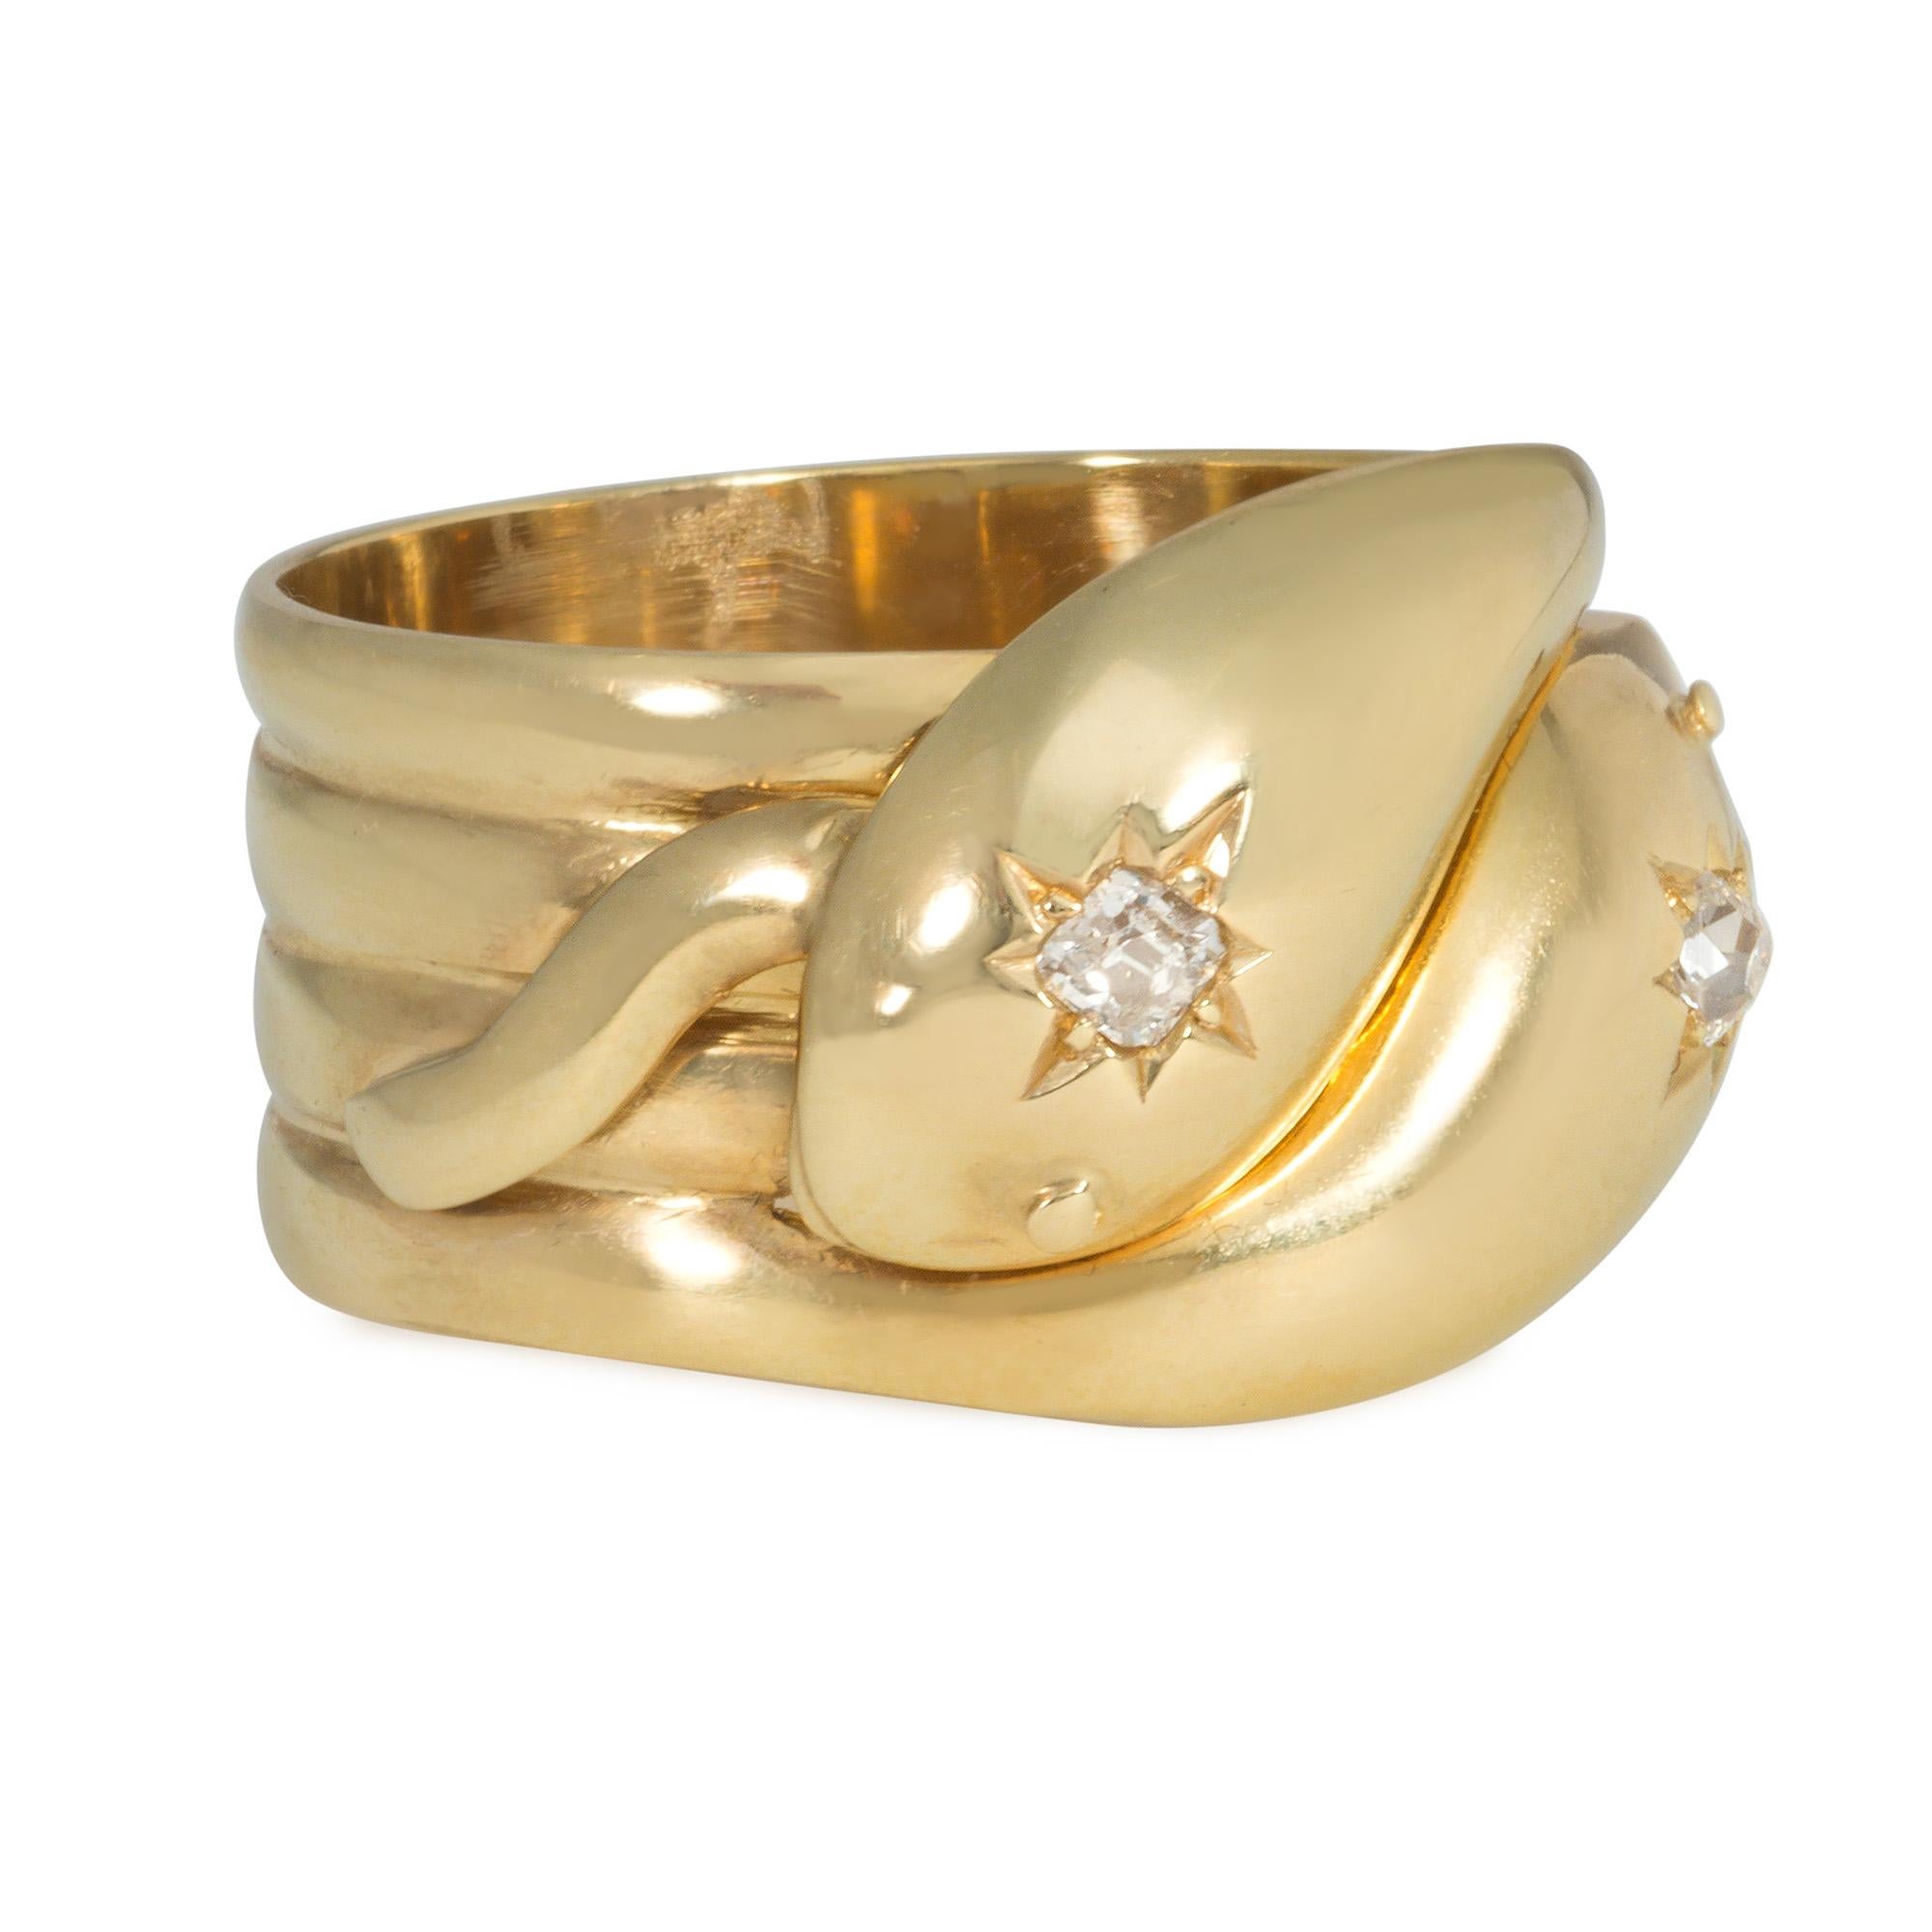 Antiker Bypass-Ring aus Gold in Form von zwei sich windenden Schlangen mit diamantbesetzten Köpfen, 18k.  London, UK Punzen

Das Schlangenmotiv in Schmuckstücken erreichte eine fieberhafte Popularität, nachdem Prinz Albert  schenkte Königin Victoria